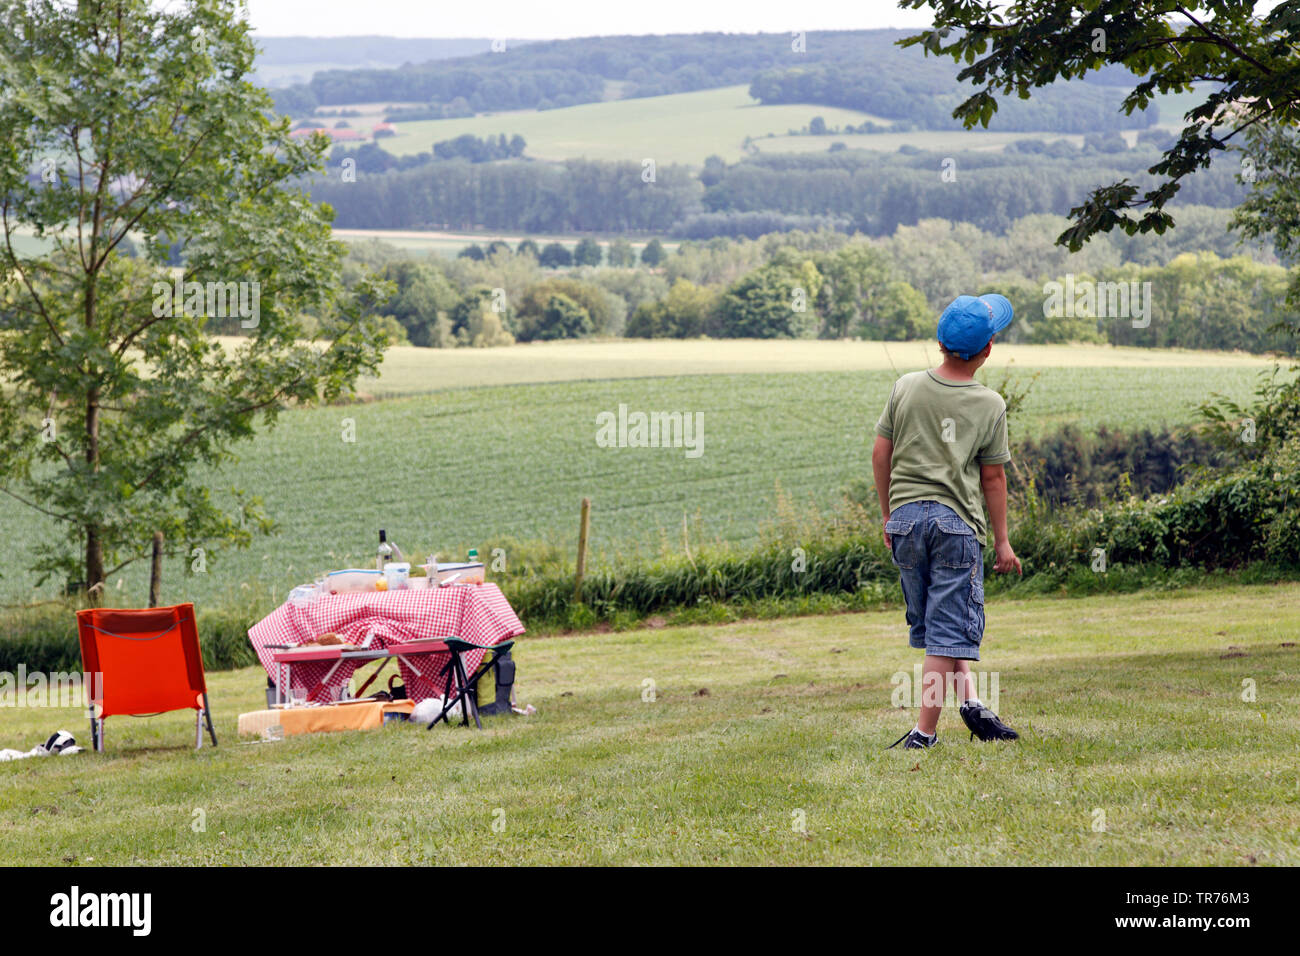 Recreationist disfrutando la vida campestre en el paisaje del sur de Limburg, Países Bajos, Limburgo, Eys Wijlre, Gulpen Wittem Foto de stock